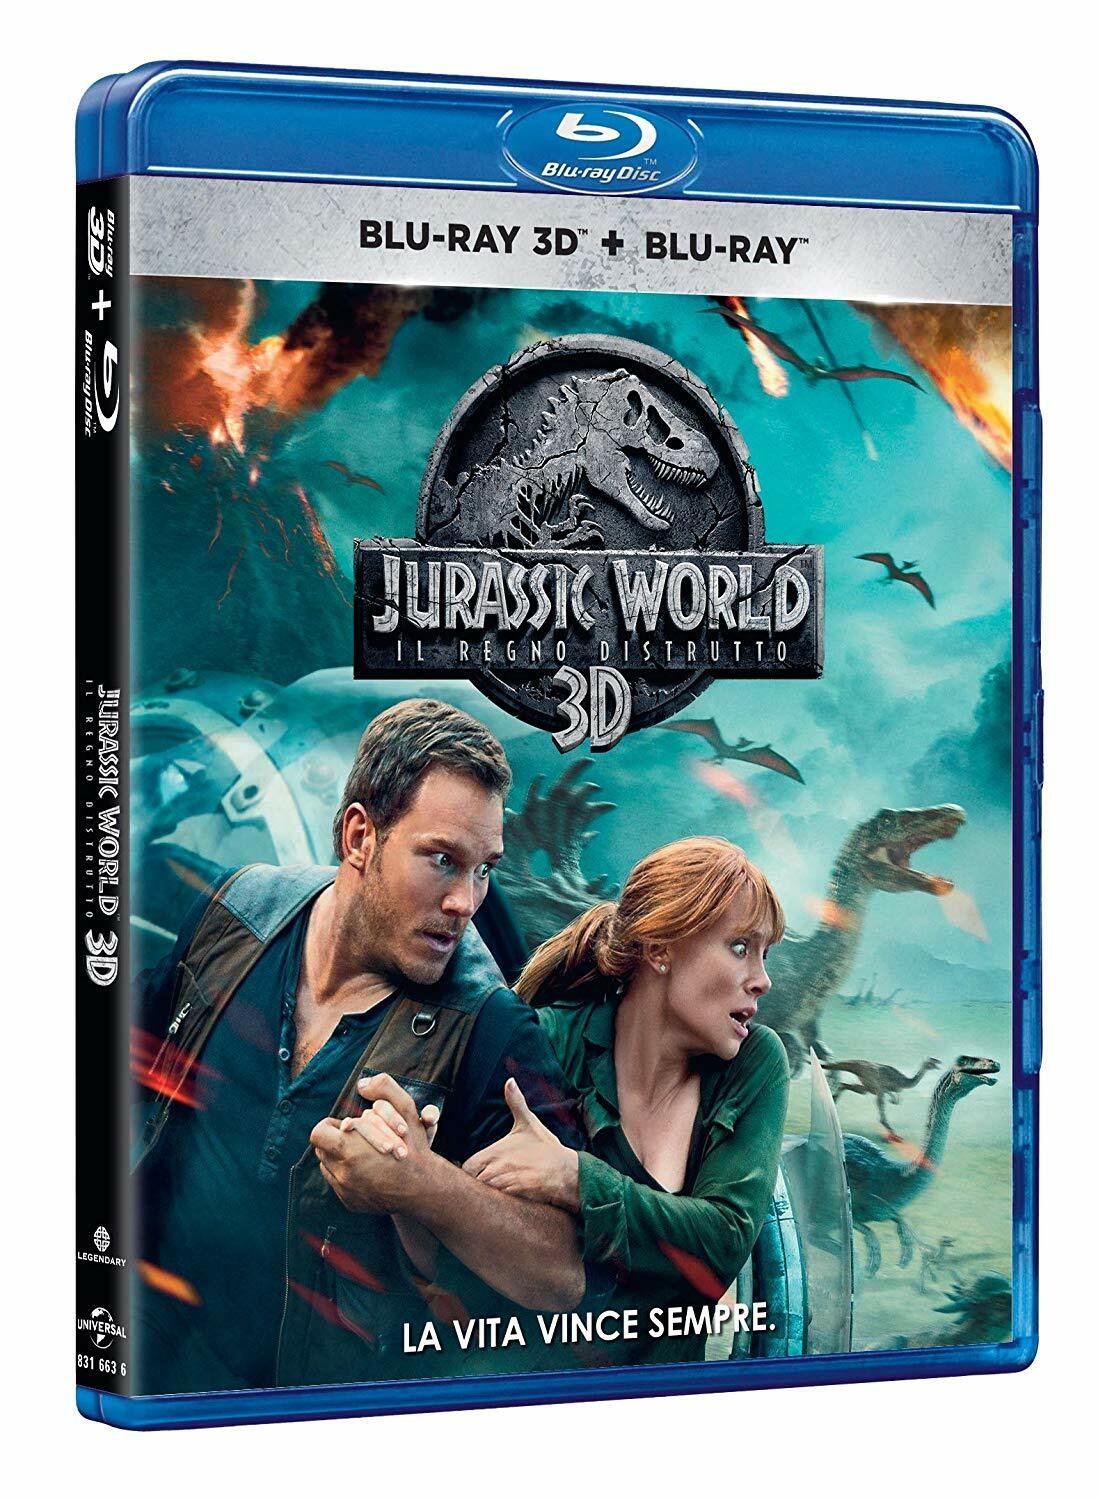 Il Blu-ray 3D di Jurassic World: Il regno distrutto